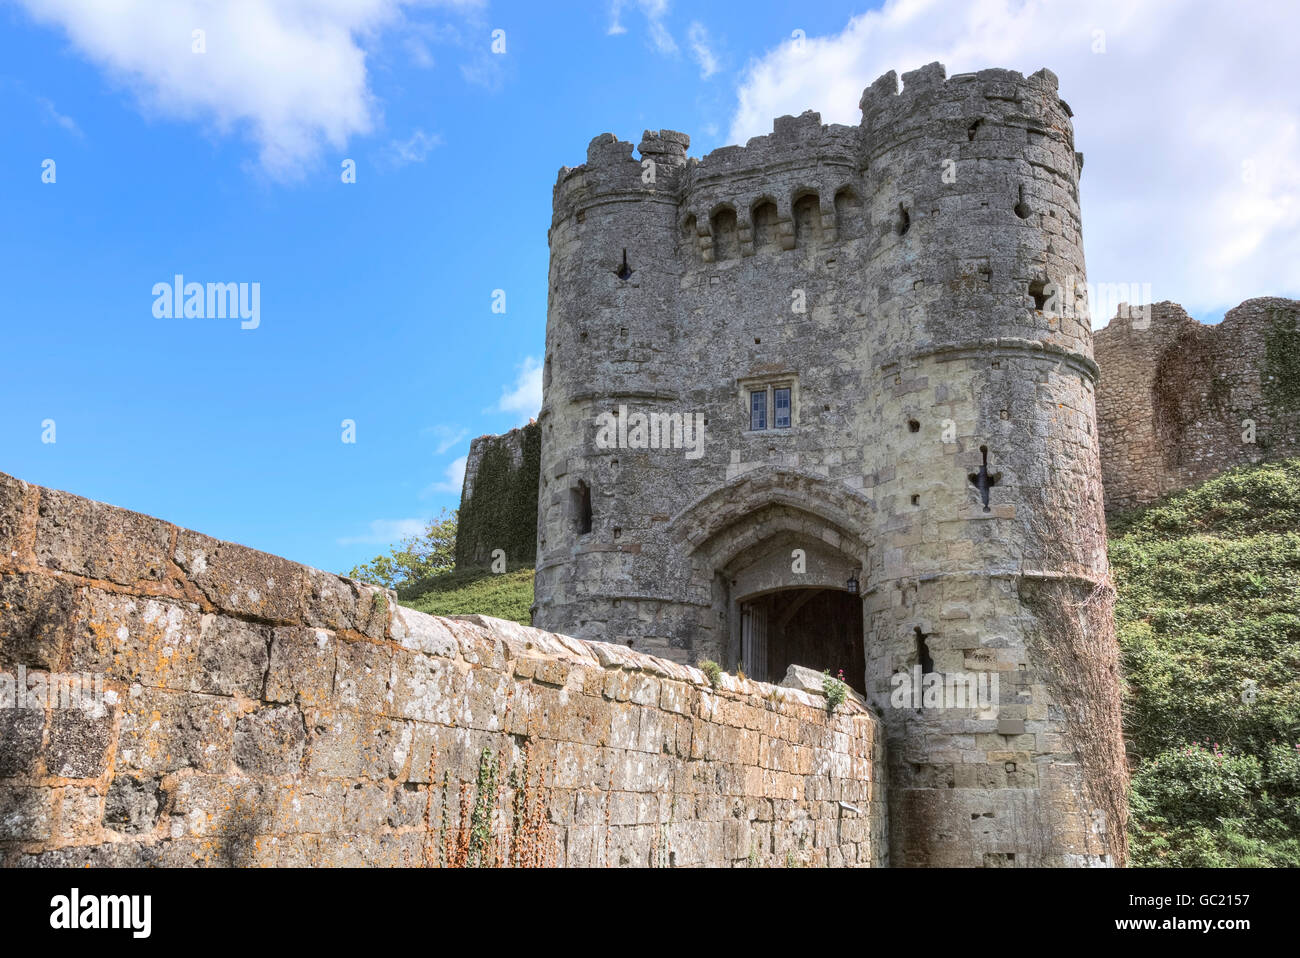 Carisbrooke Castle, Isle of Wight, England, UK Stock Photo